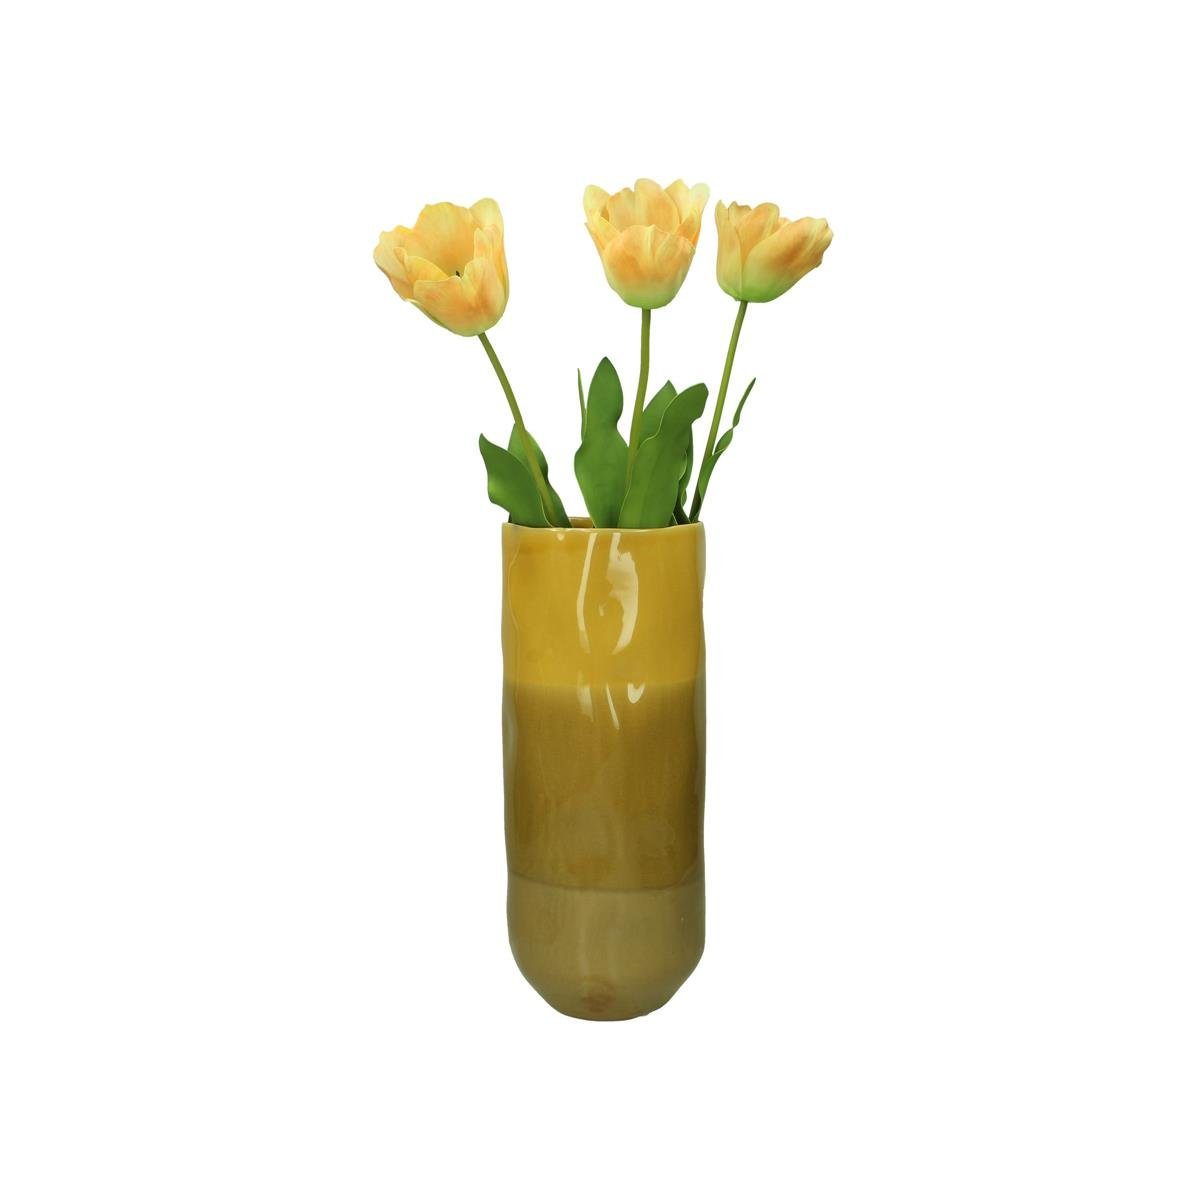 Engelnburg Dekovase Engelnburg Vase (kein Hochwertige Set) 16,4x16,4x38,7cm Steinzeug Blumenvase 1er Set, Gelb